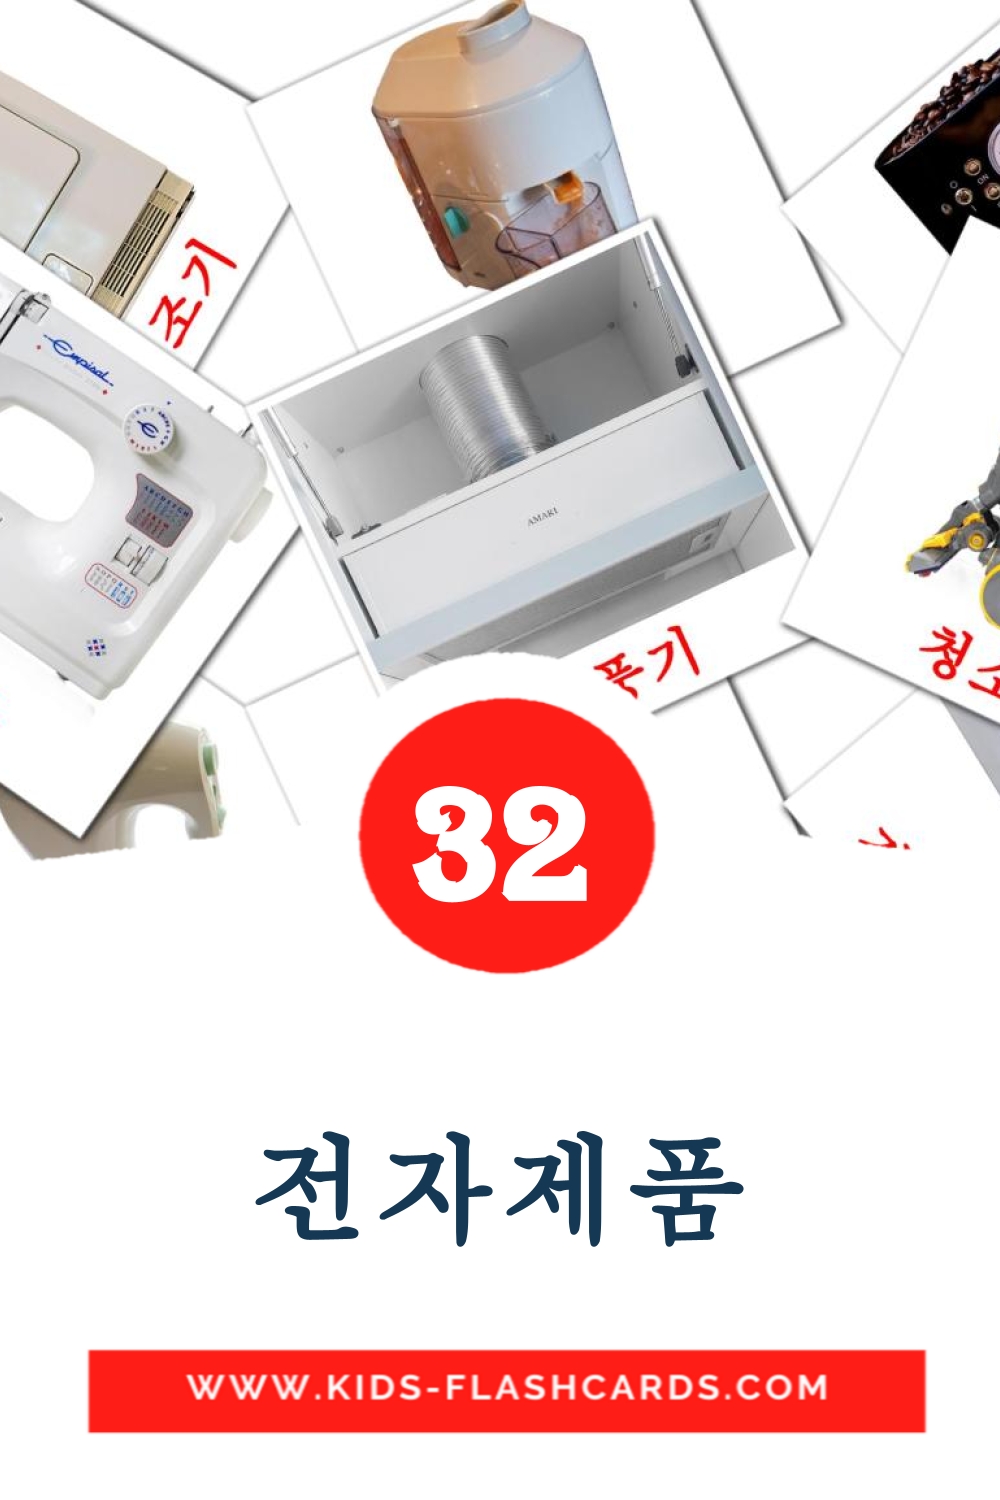 32 전자제품 fotokaarten voor kleuters in het koreaanse